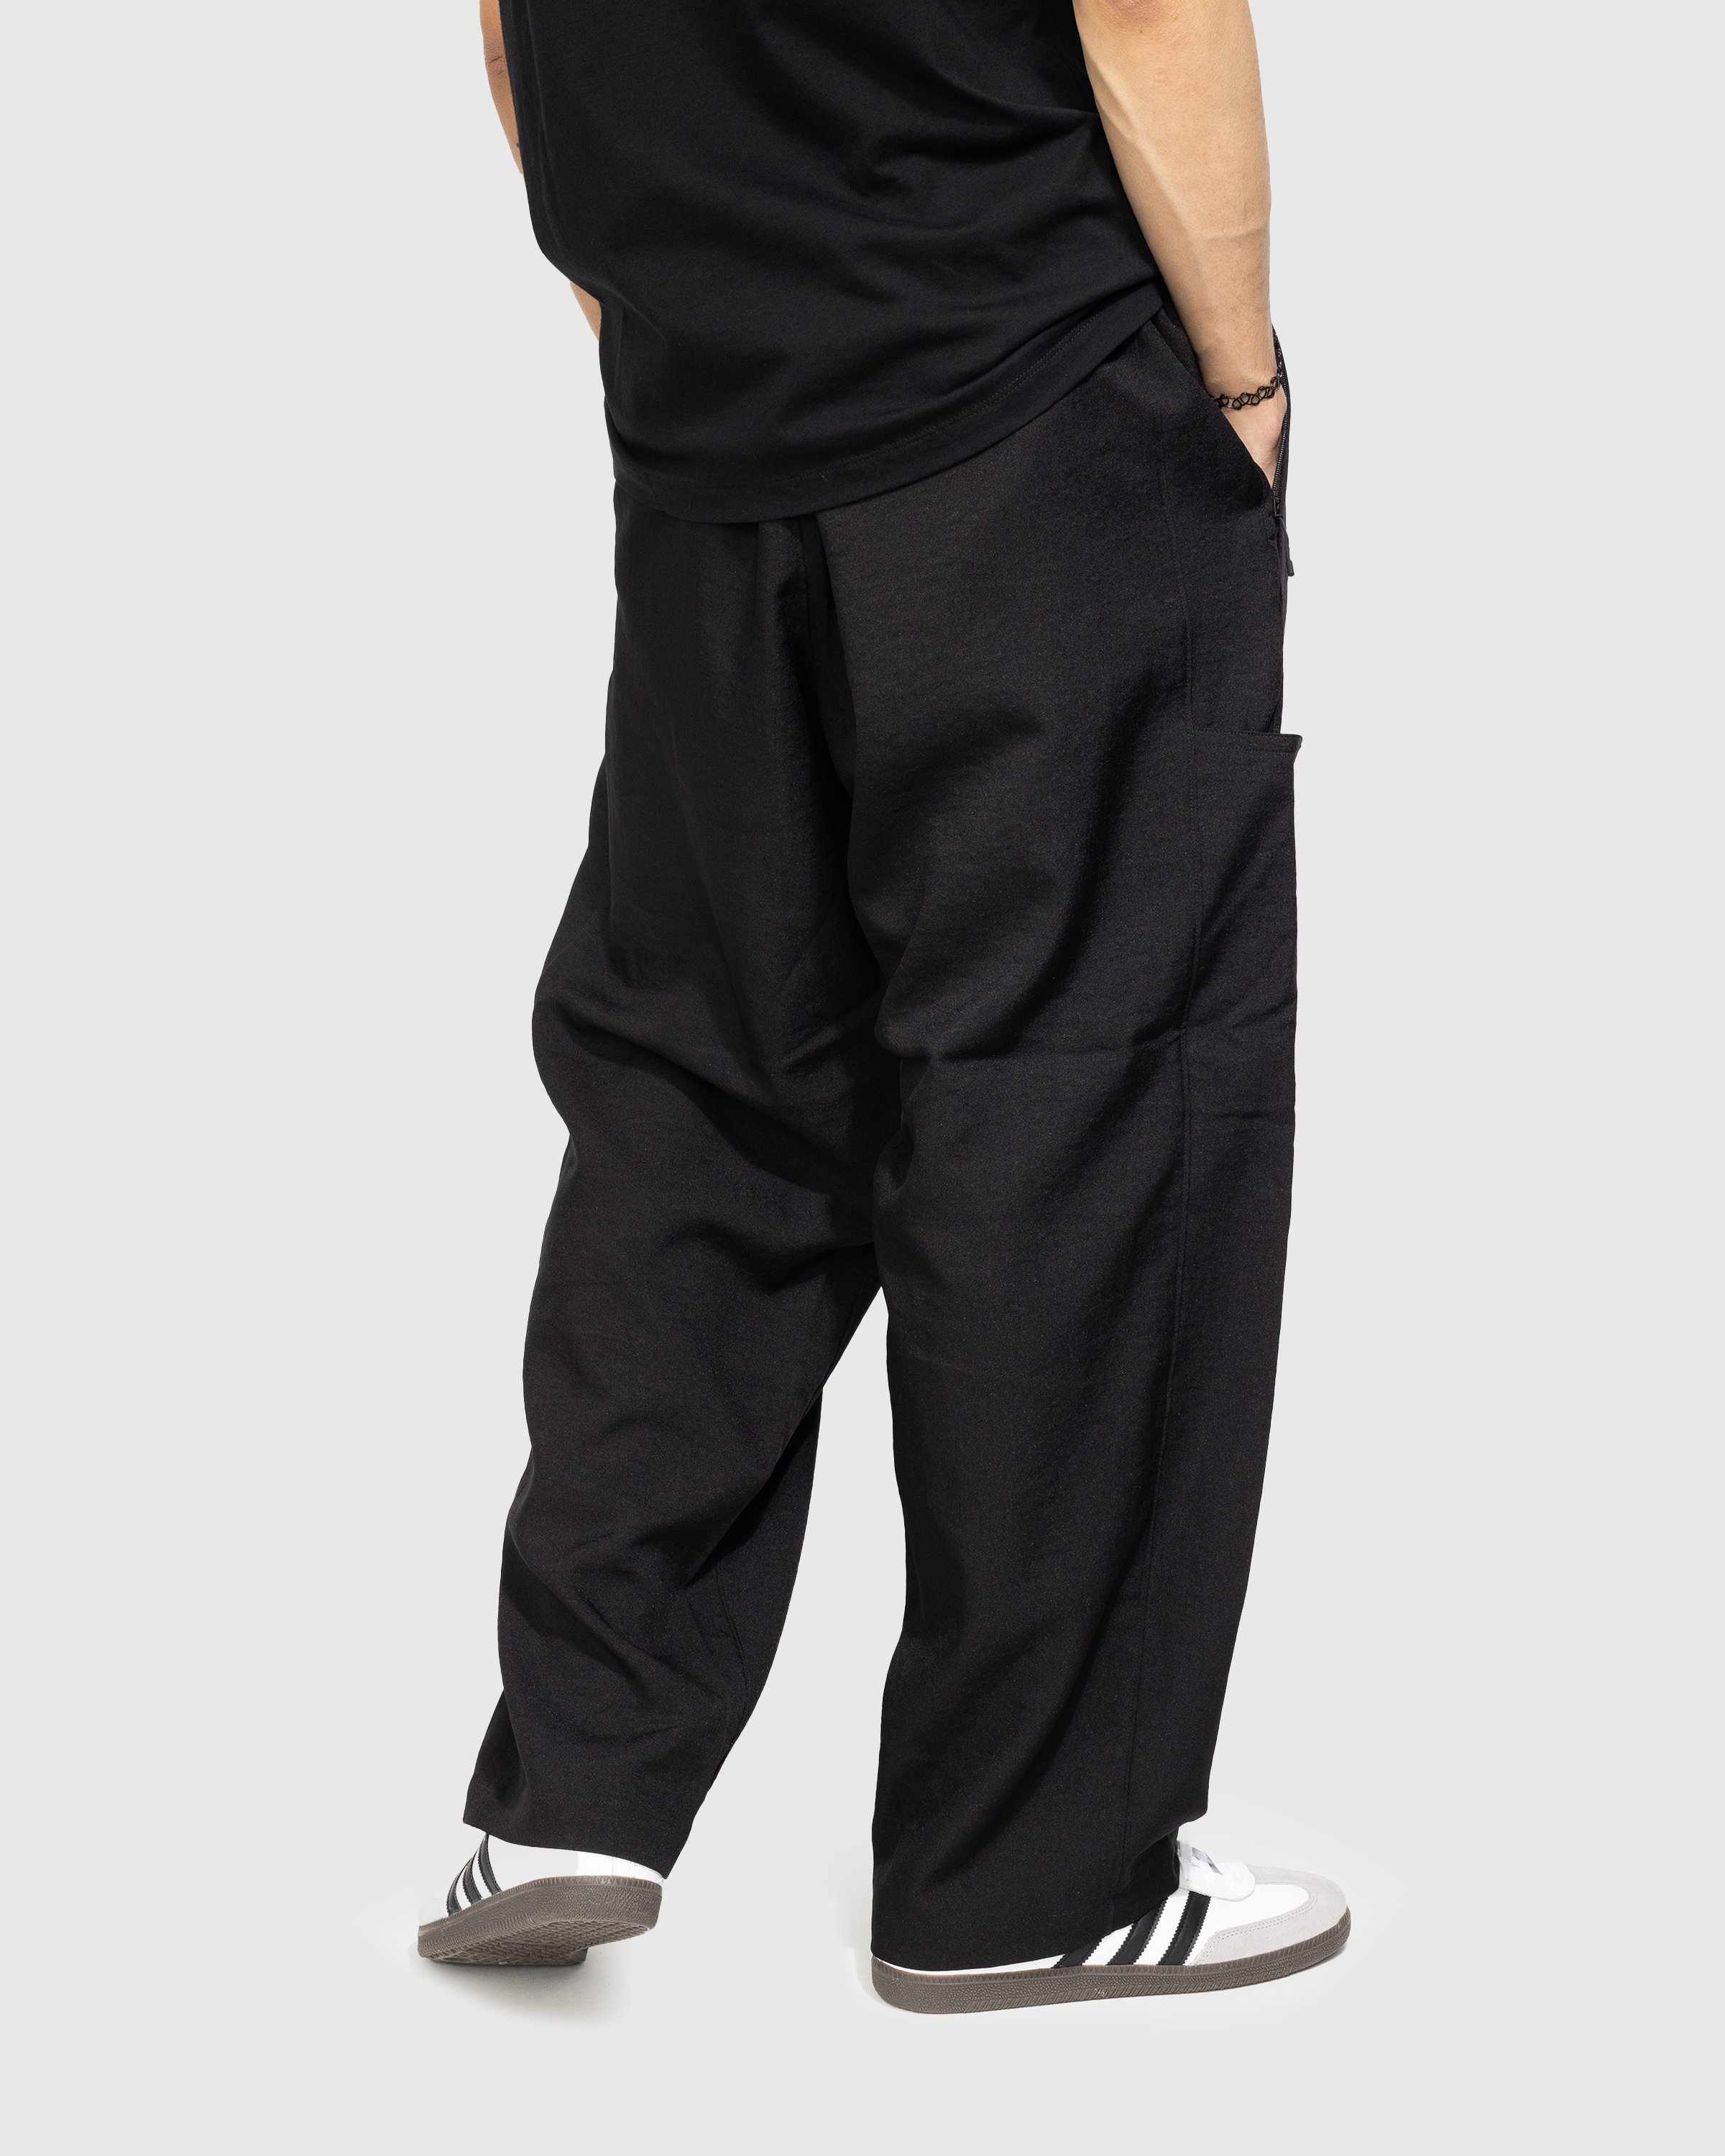 Y-3 - CL S UNI Pants - Clothing - Black - Image 3